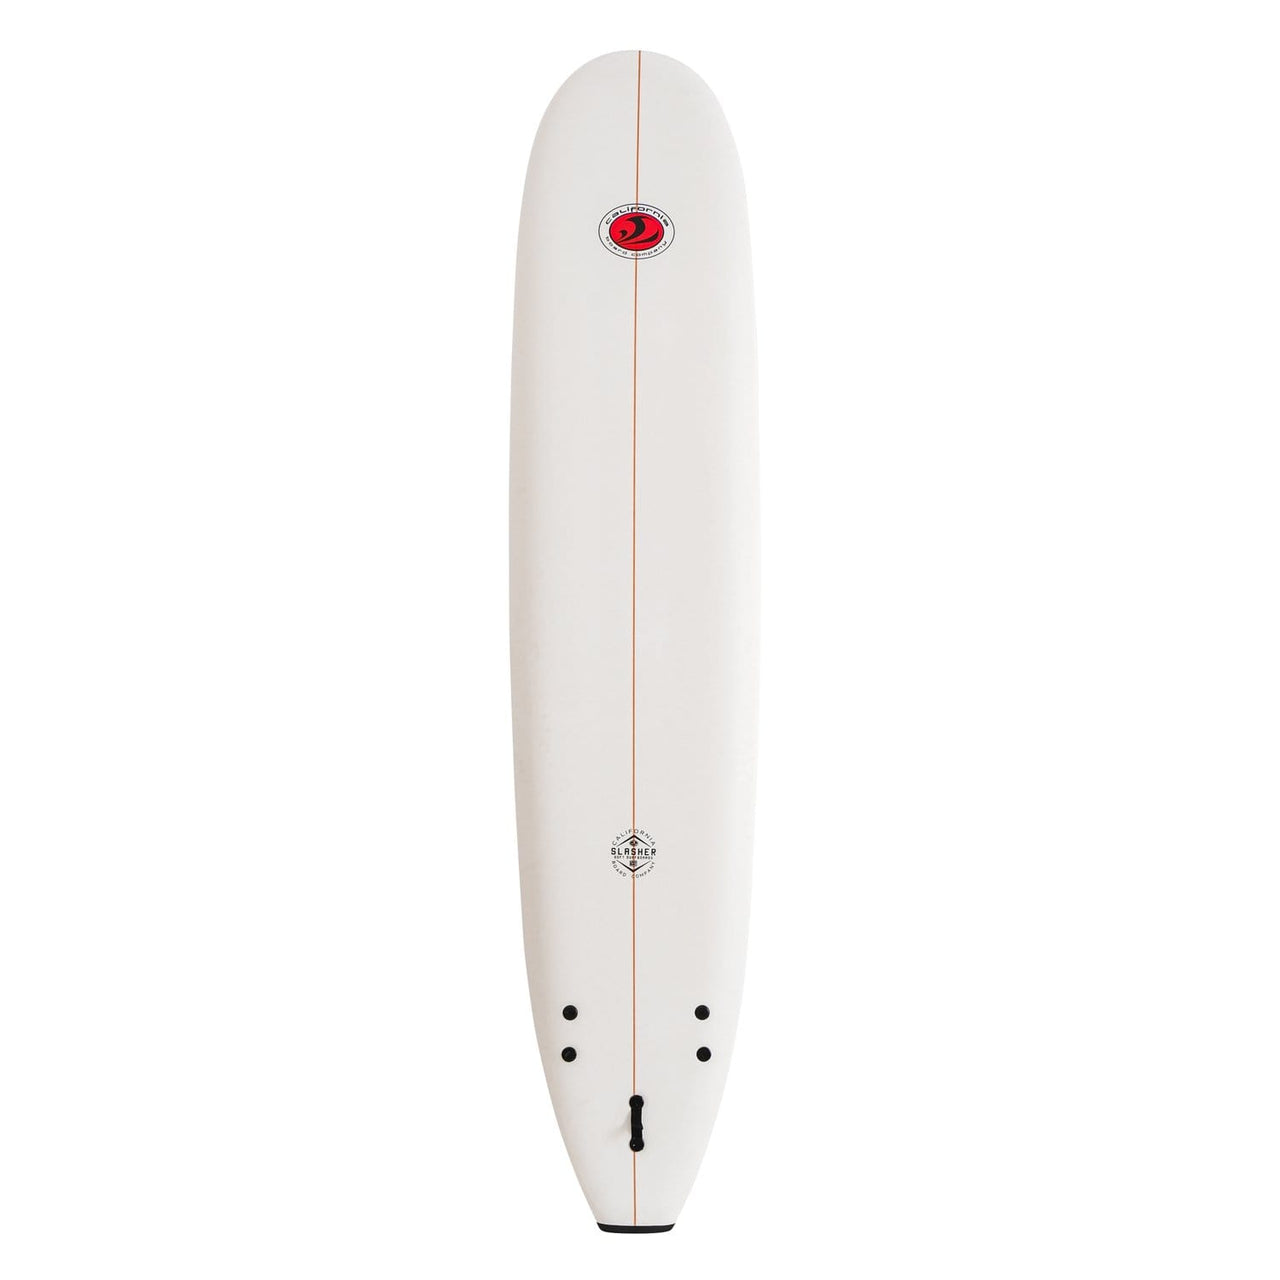 CBC 9'0 Slasher Foam Surfboard